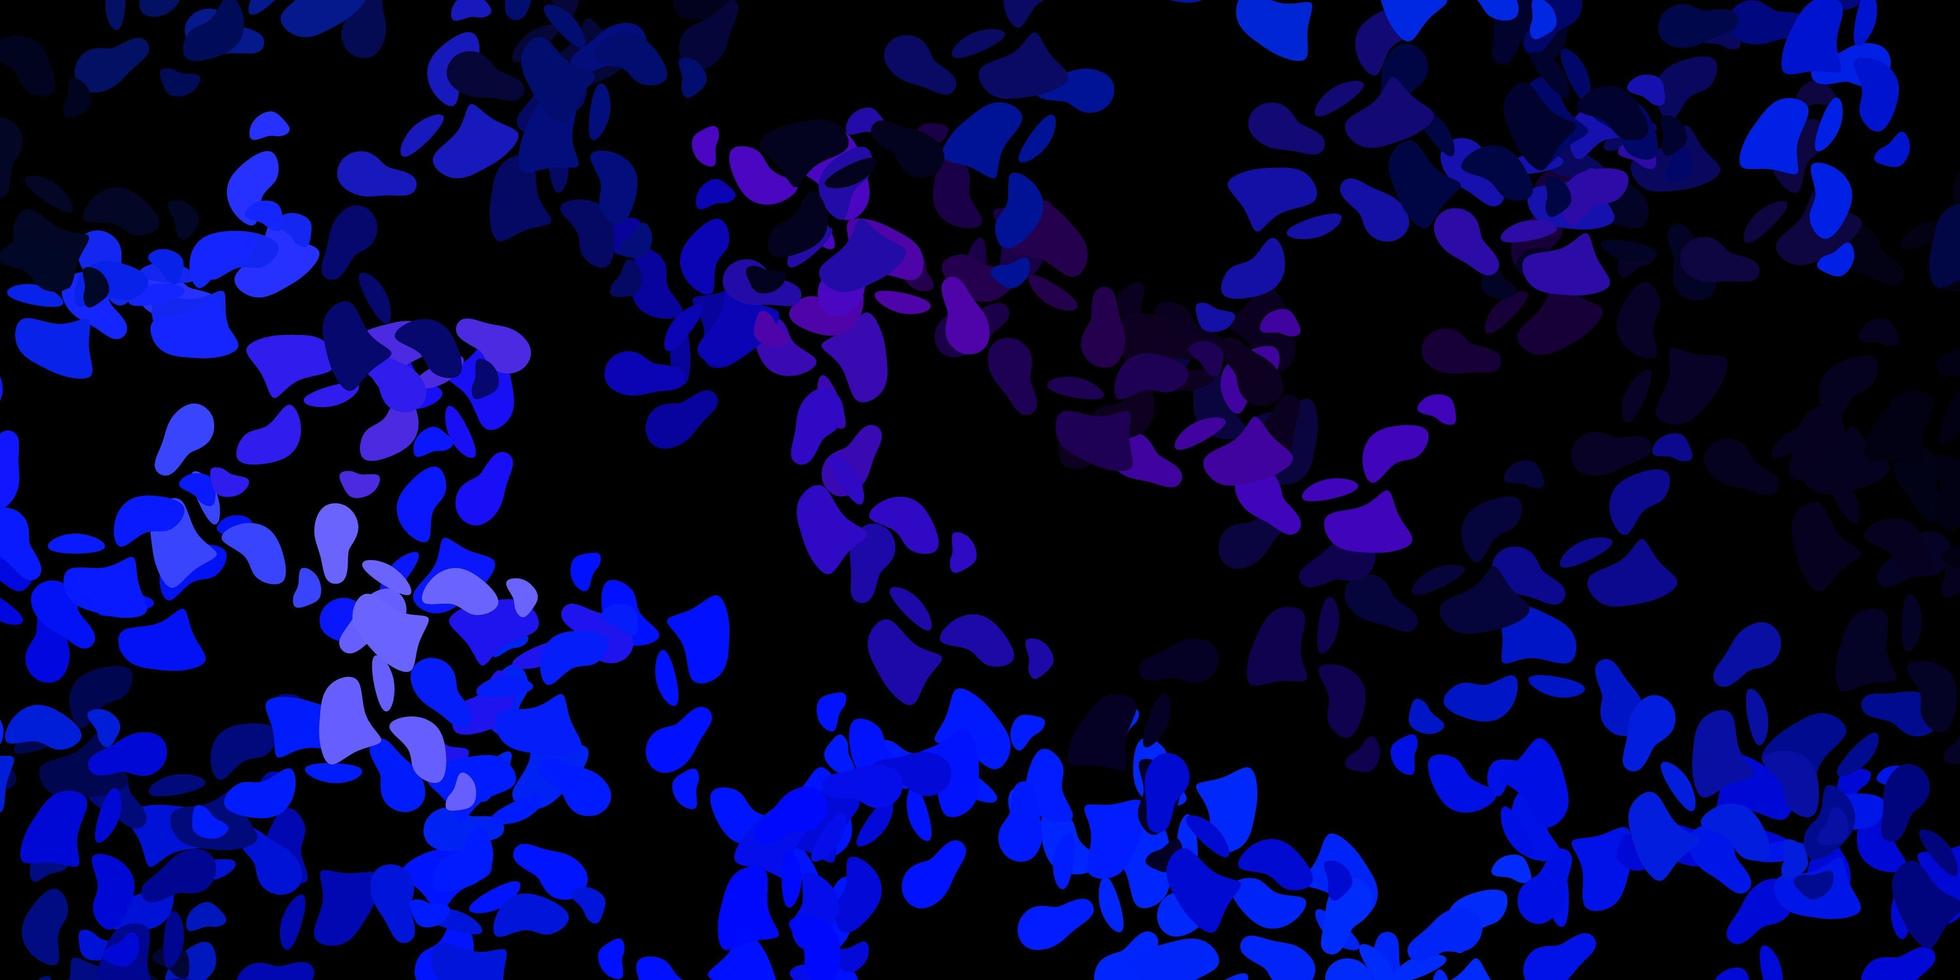 mörkrosa, blå vektormall med abstrakta former. vektor